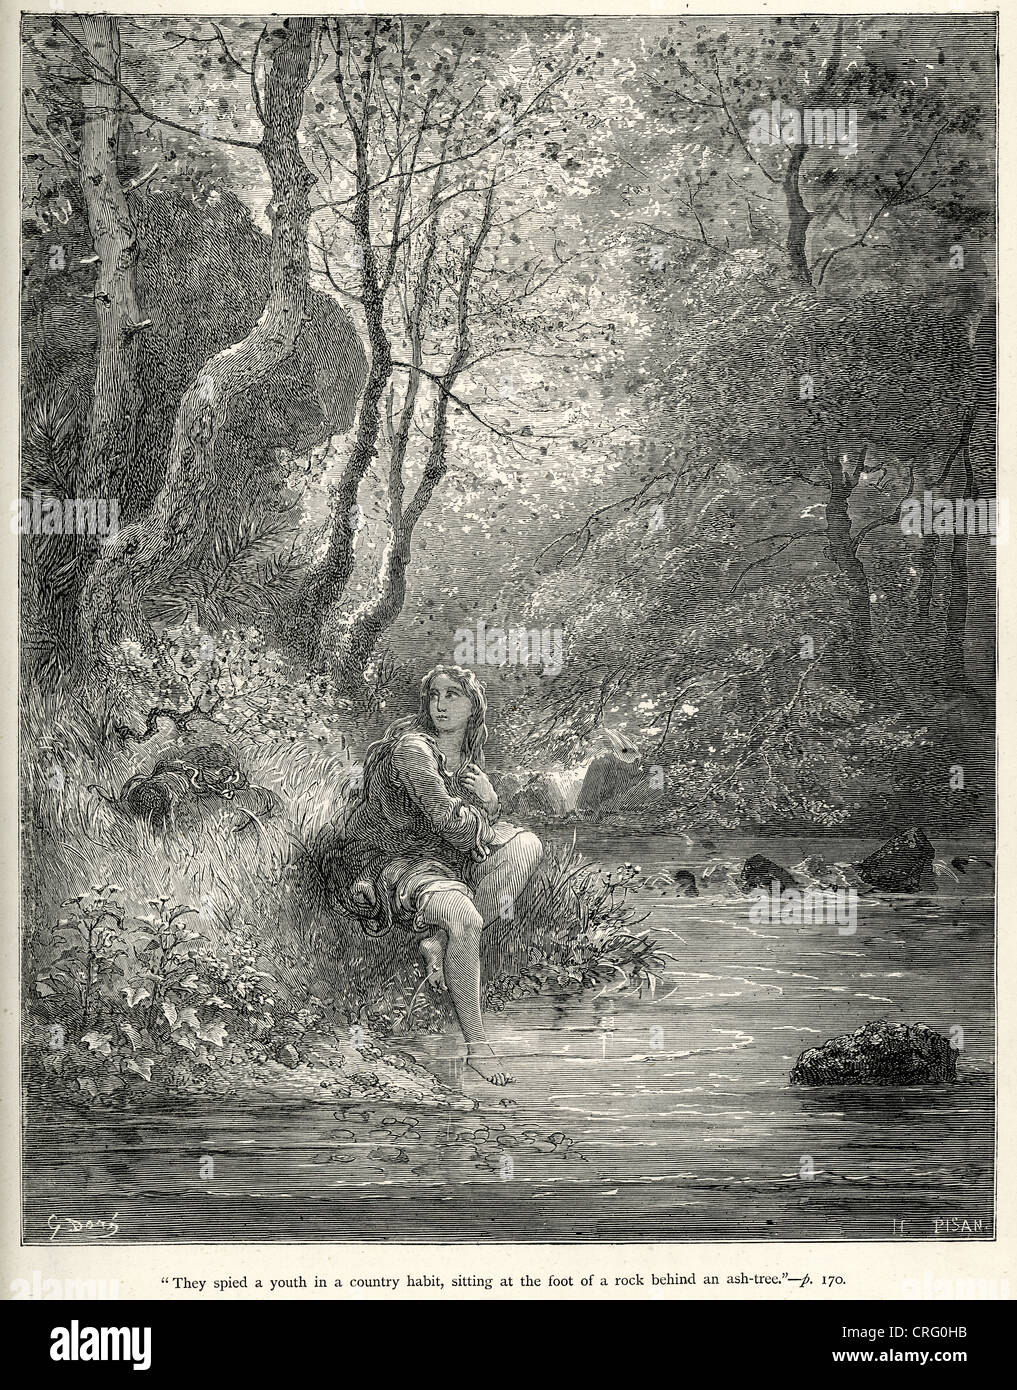 Sie erblickte eine Jugend im Land Gewohnheit. Illustration von Gustave Dore von Don Quijote. Stockfoto